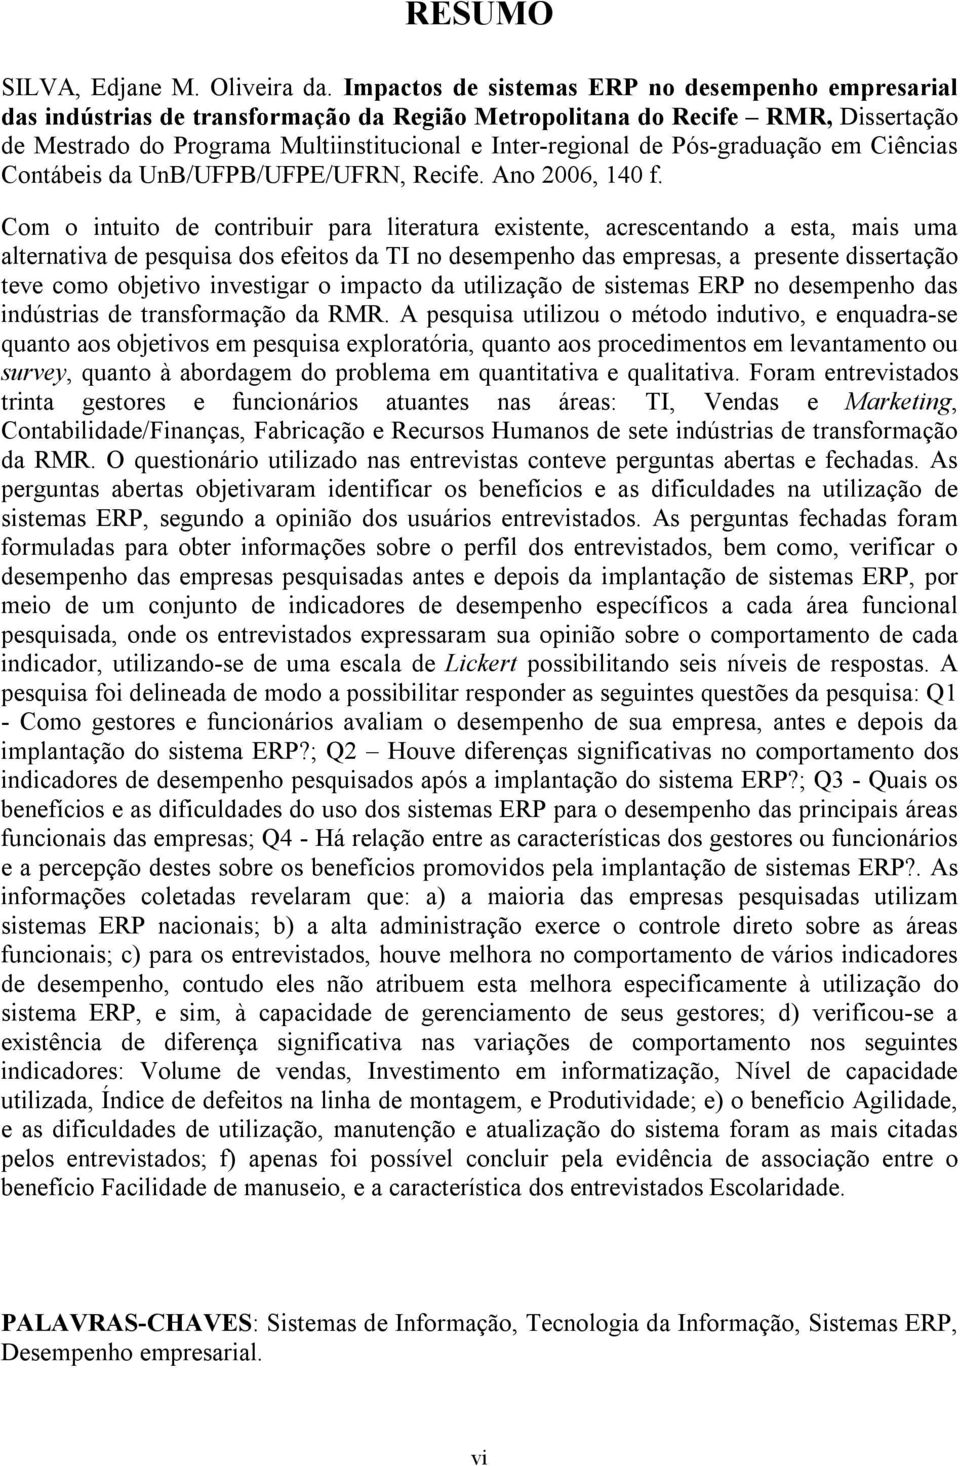 Pós-graduação em Ciências Contábeis da UnB/UFPB/UFPE/UFRN, Recife. Ano 2006, 140 f.